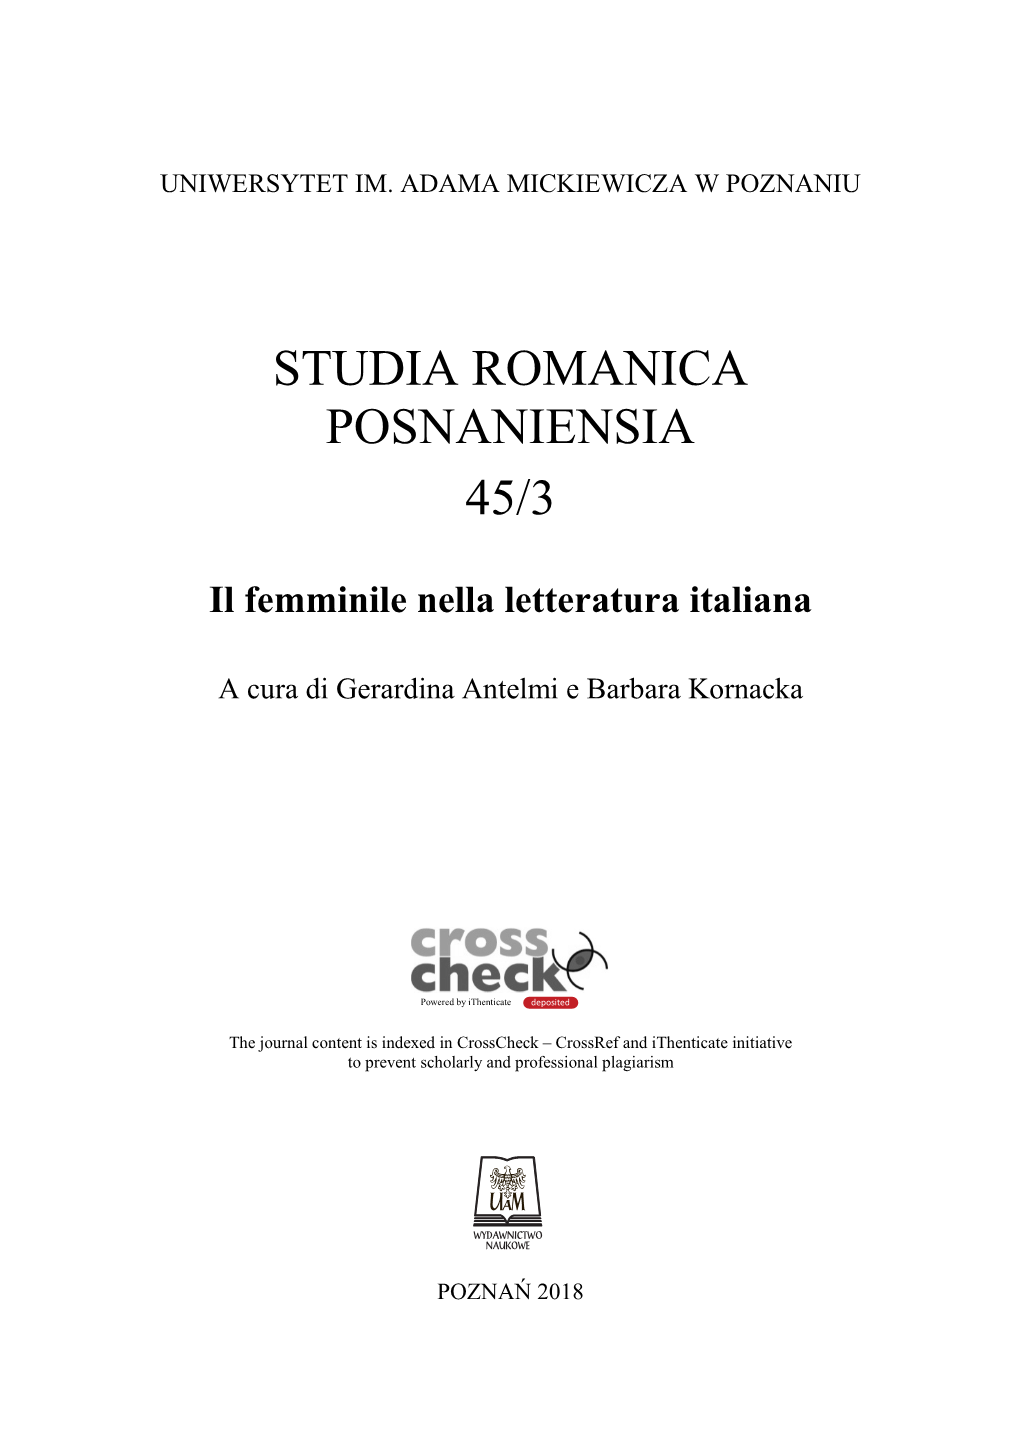 Studia Romanica Posnaniensia 45/3